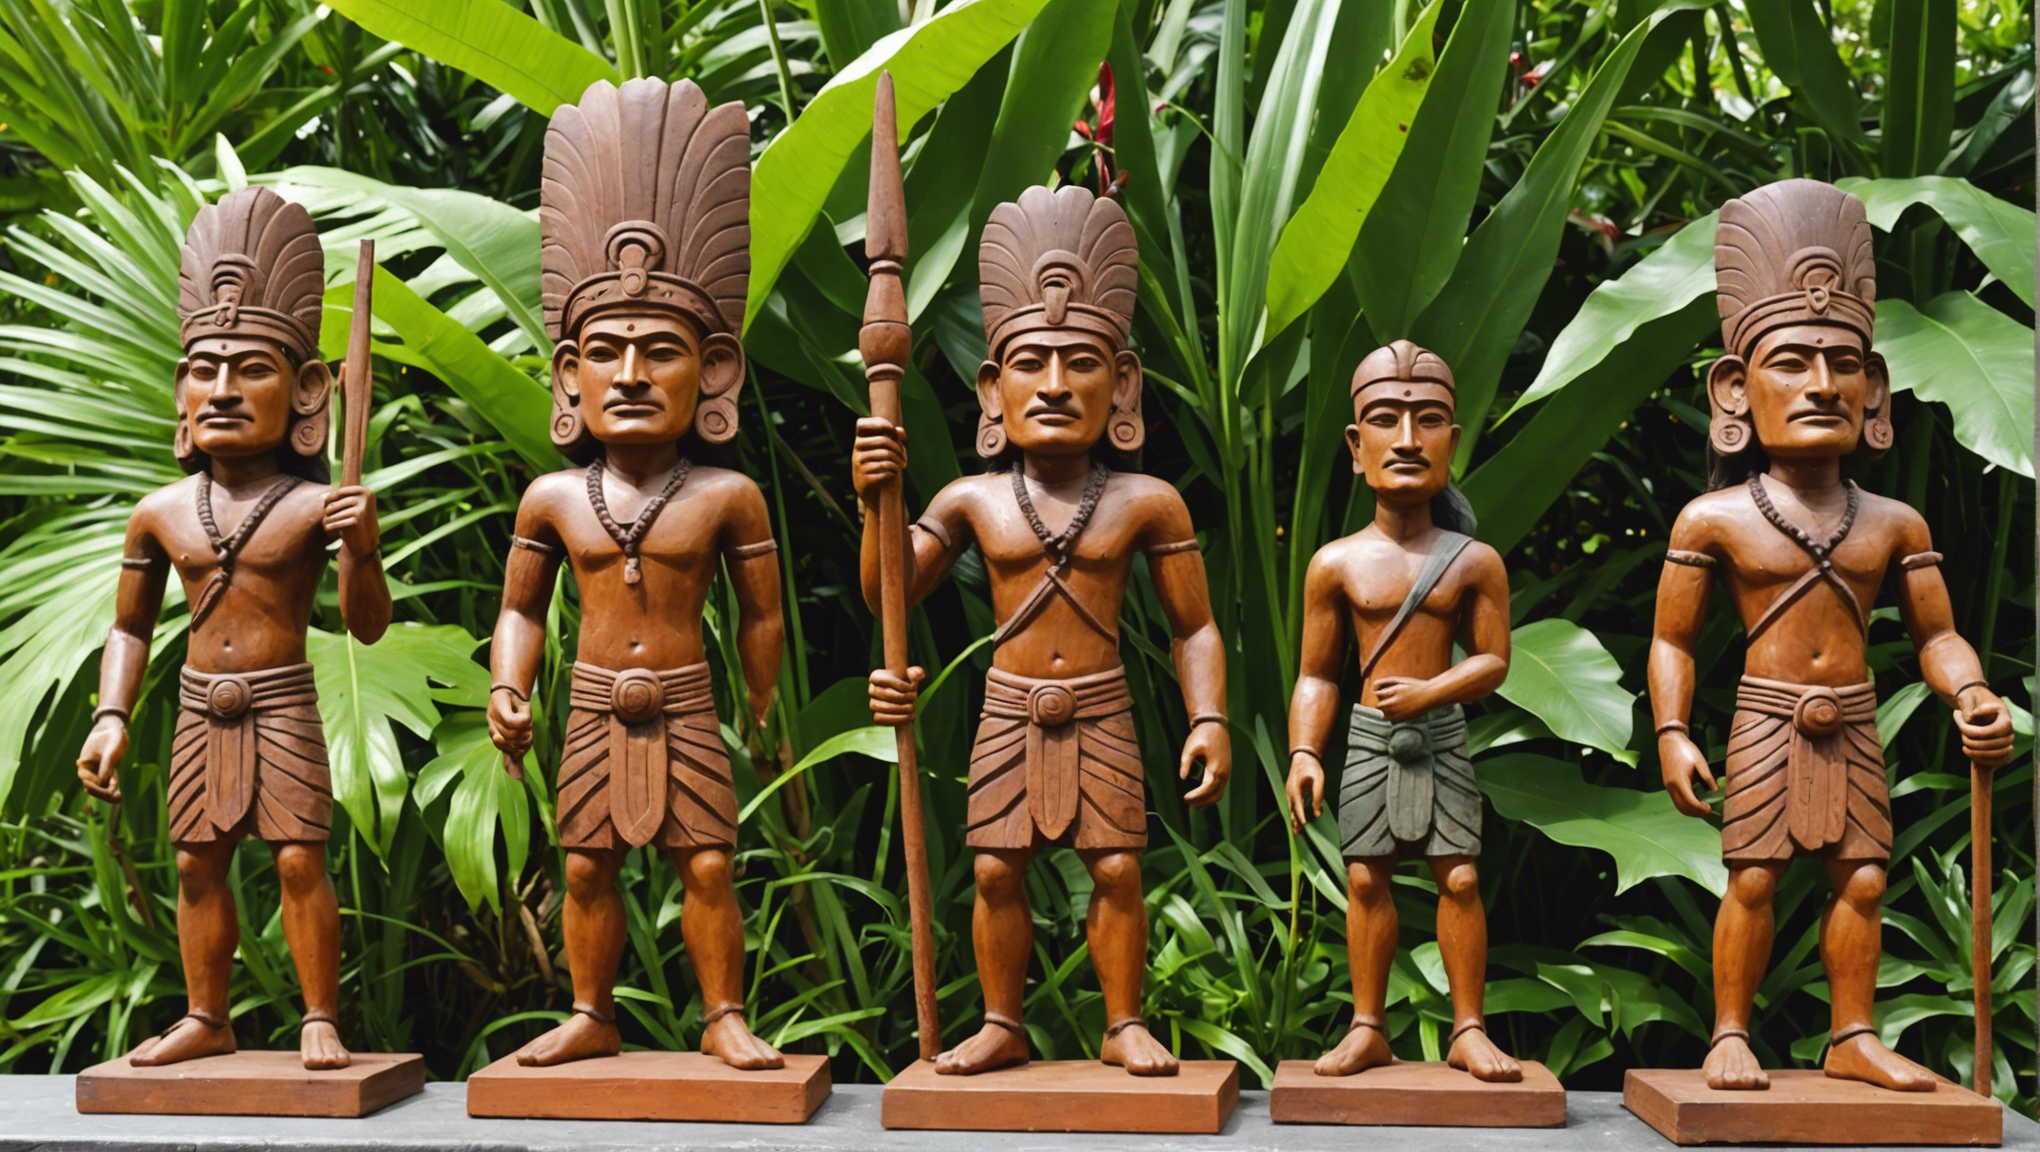 découvrez les trésors artistiques de tahiti en peinture et sculpture polynésienne. plongez dans l'art et la culture de la polynésie à travers ses magnifiques créations artistiques.